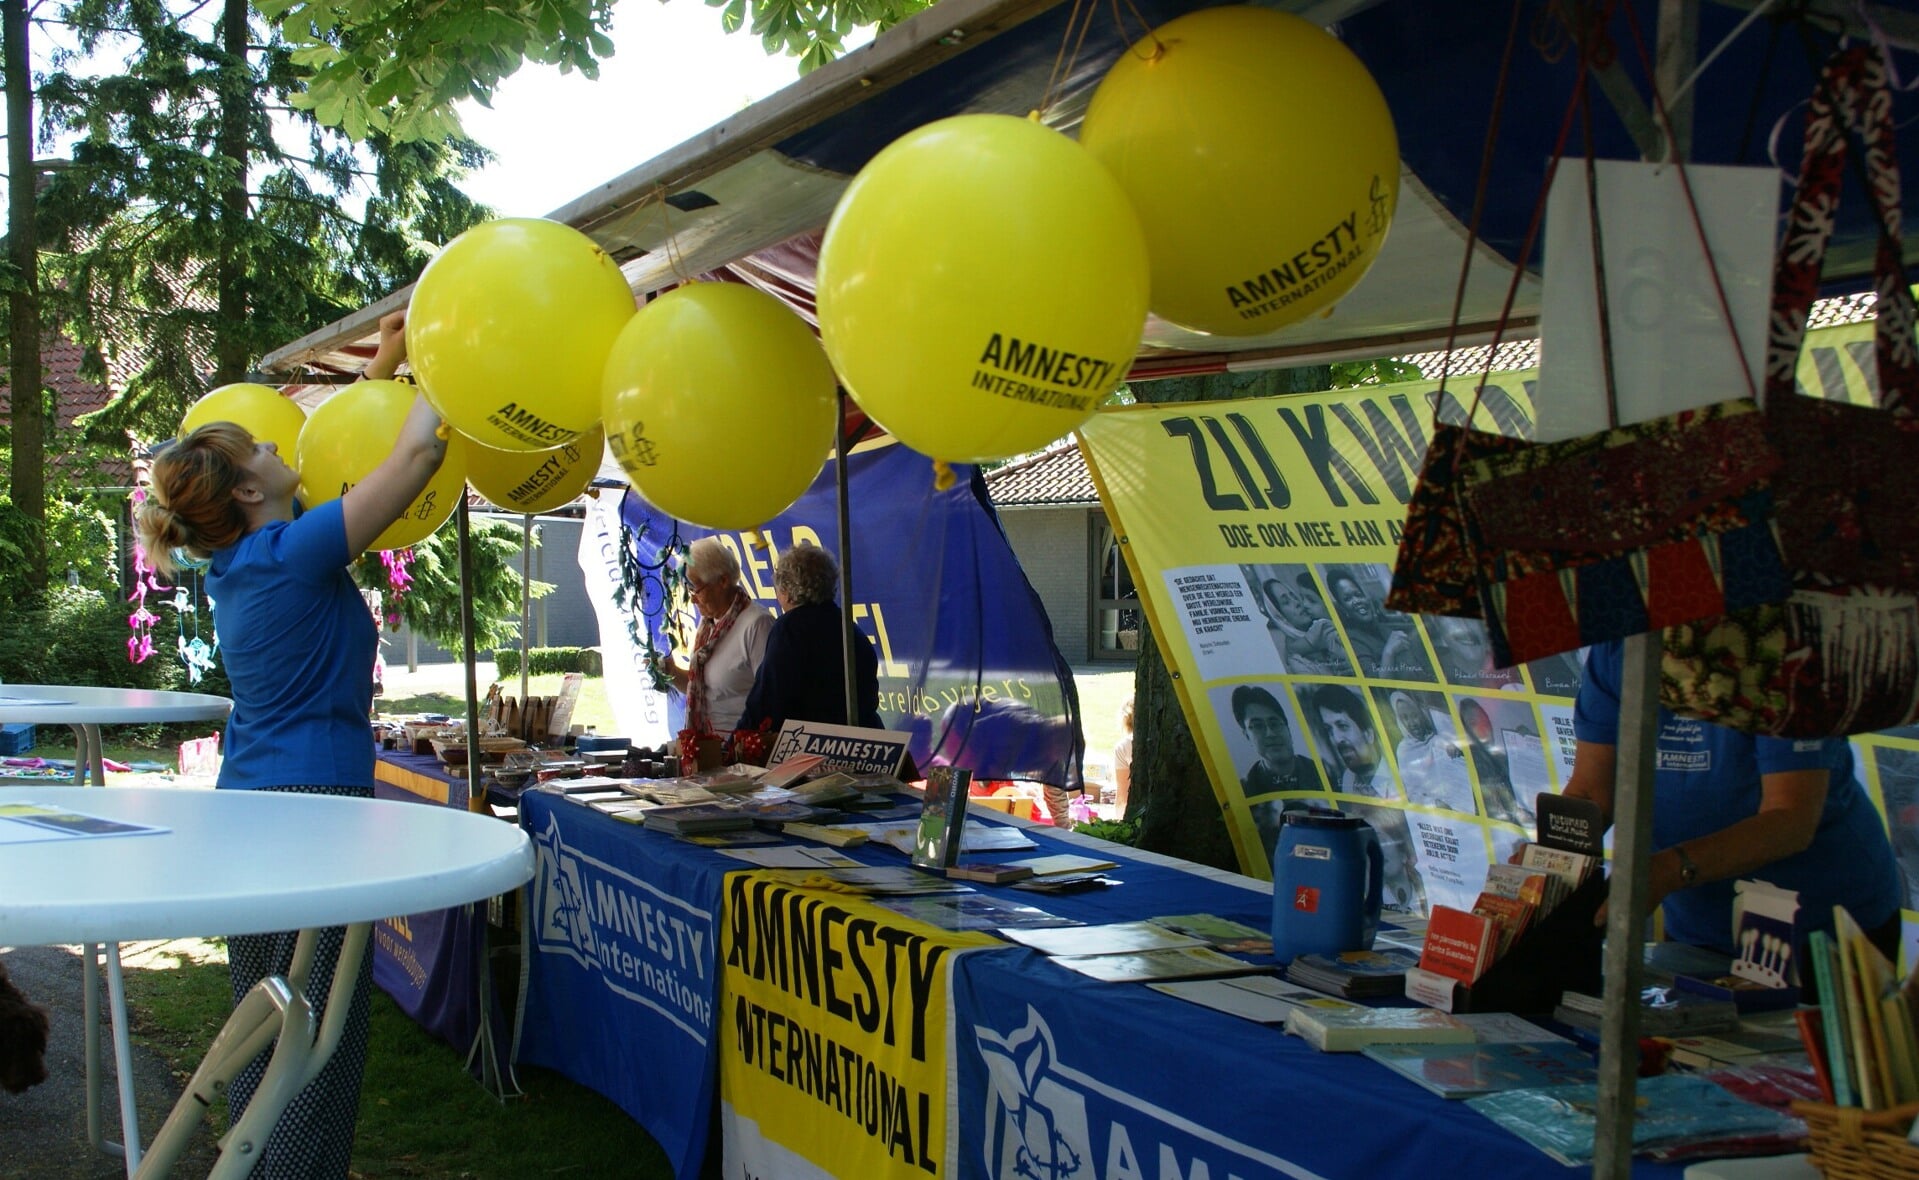 De lokale afdeling van Amnesty International is jaarlijks aanwezig bij het evenement Bazaar Boxtel. (Foto: Marc Cleutjens).